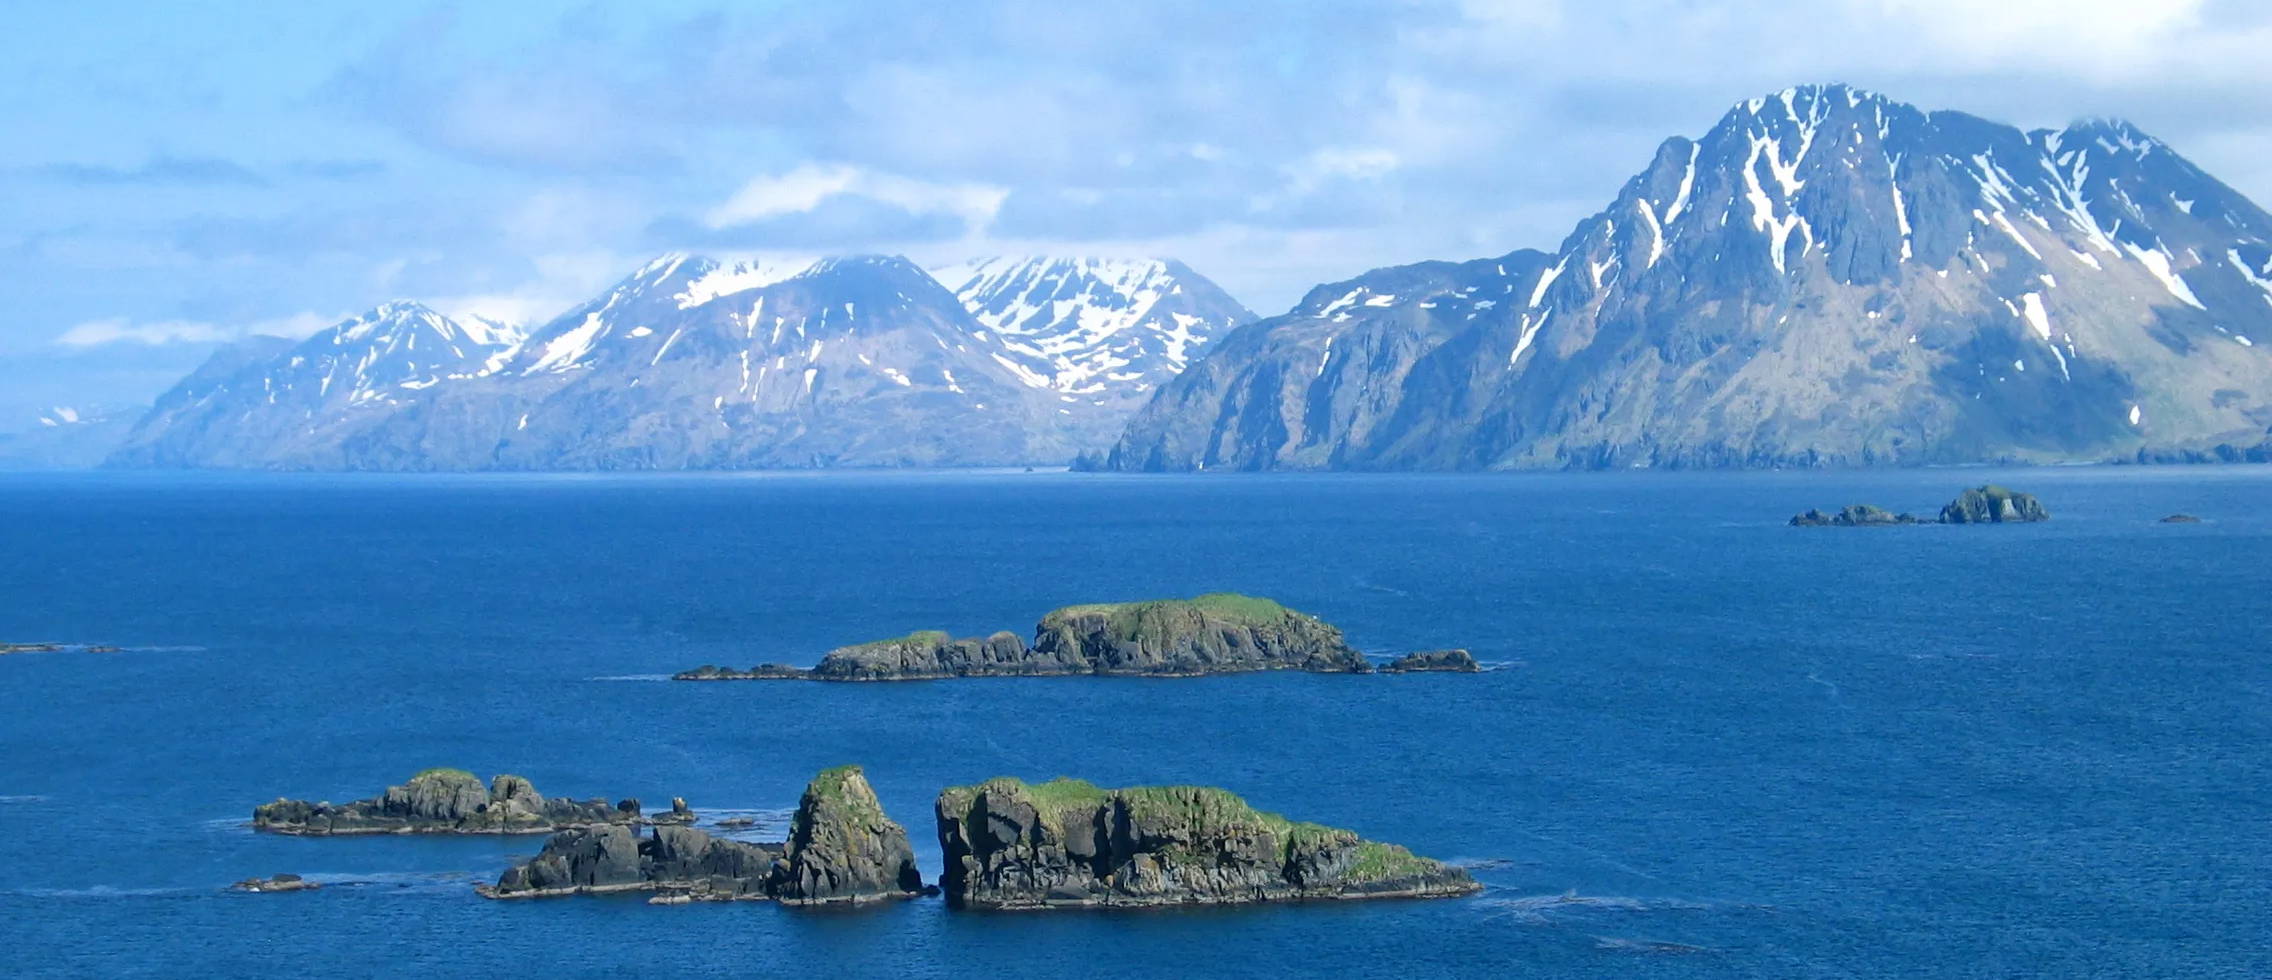 Географические острова. Аляска и Алеутские острова. Аляска Берингово море. Залив Качемак Аляска. Камчатка Берингово море.